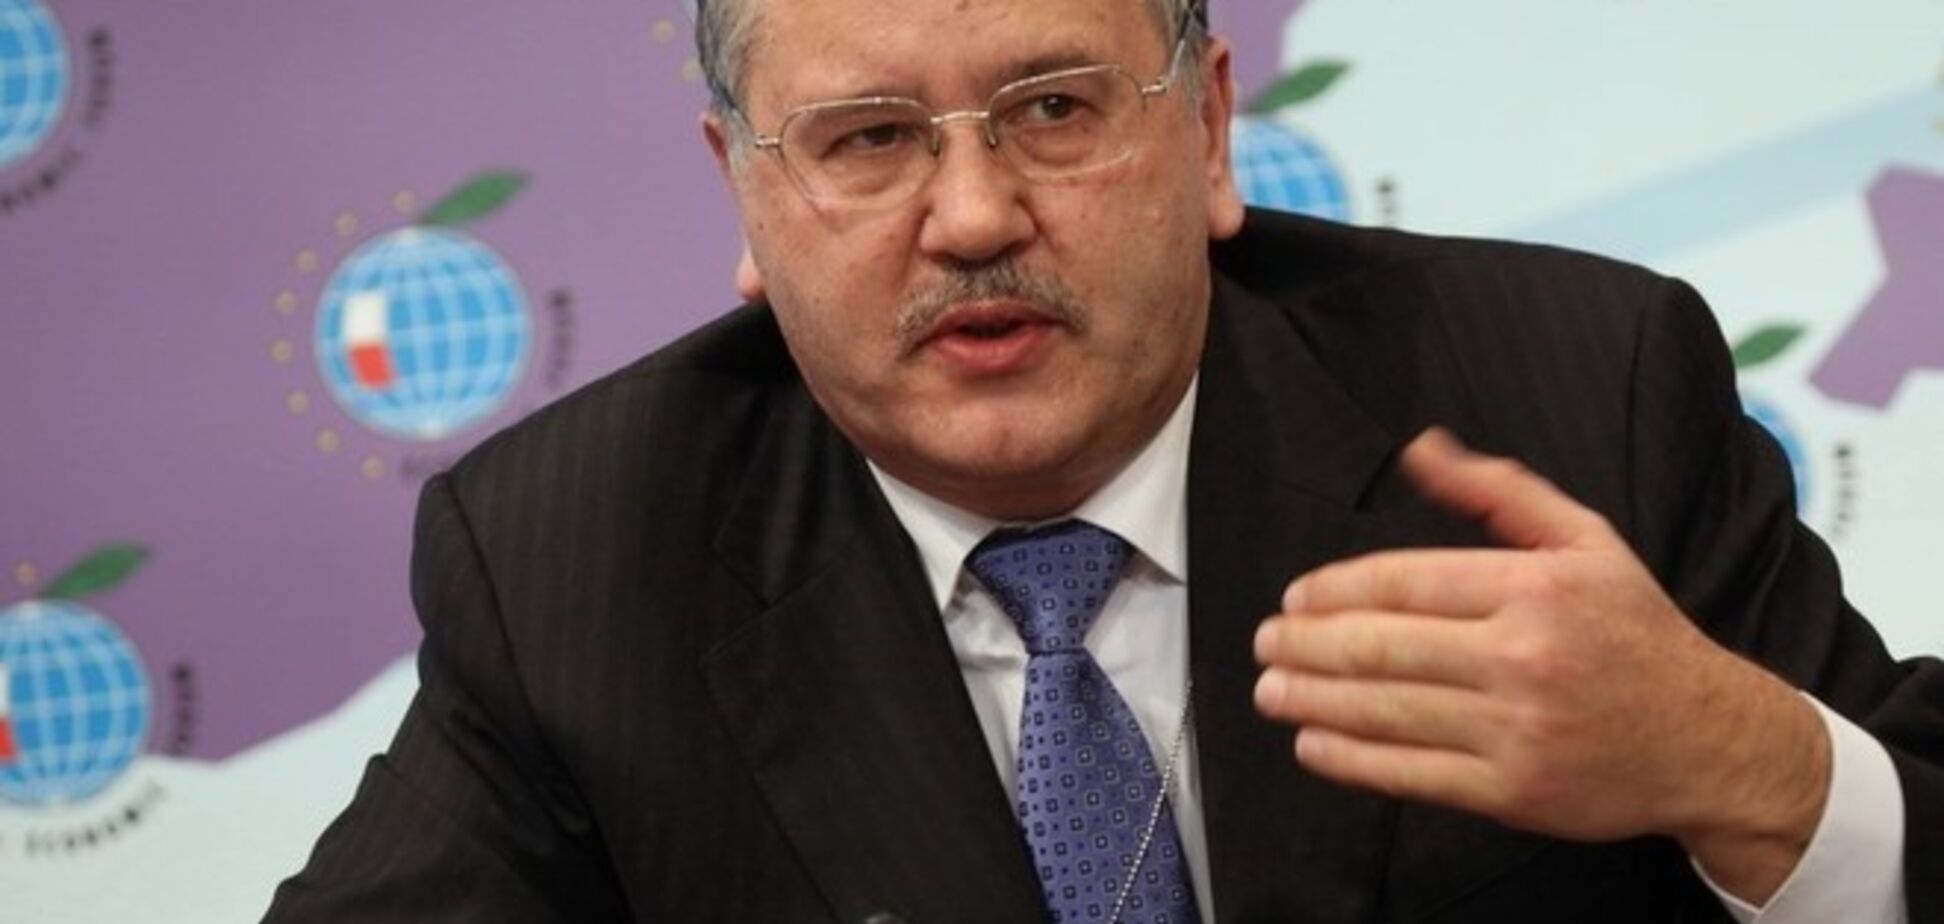 Гриценко заявил, что пост министра обороны ему не предлагали